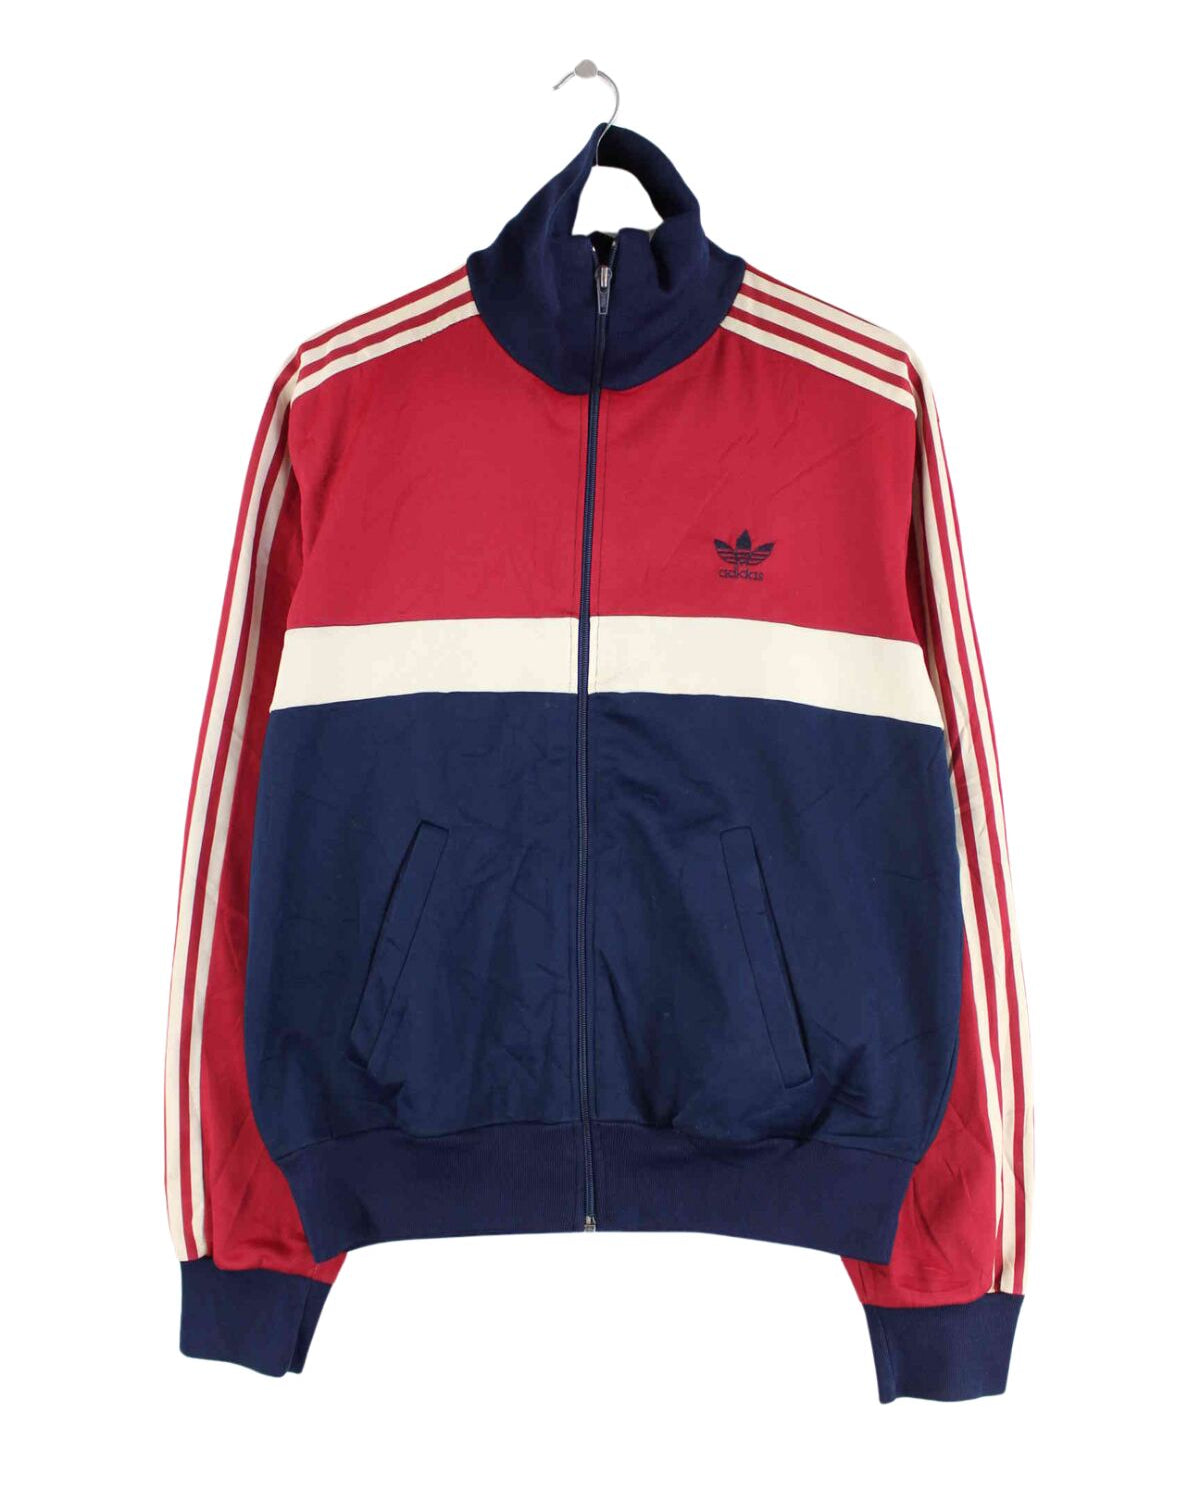 Adidas 70s Vintage Trainingsjacke Mehrfarbig M (front image)